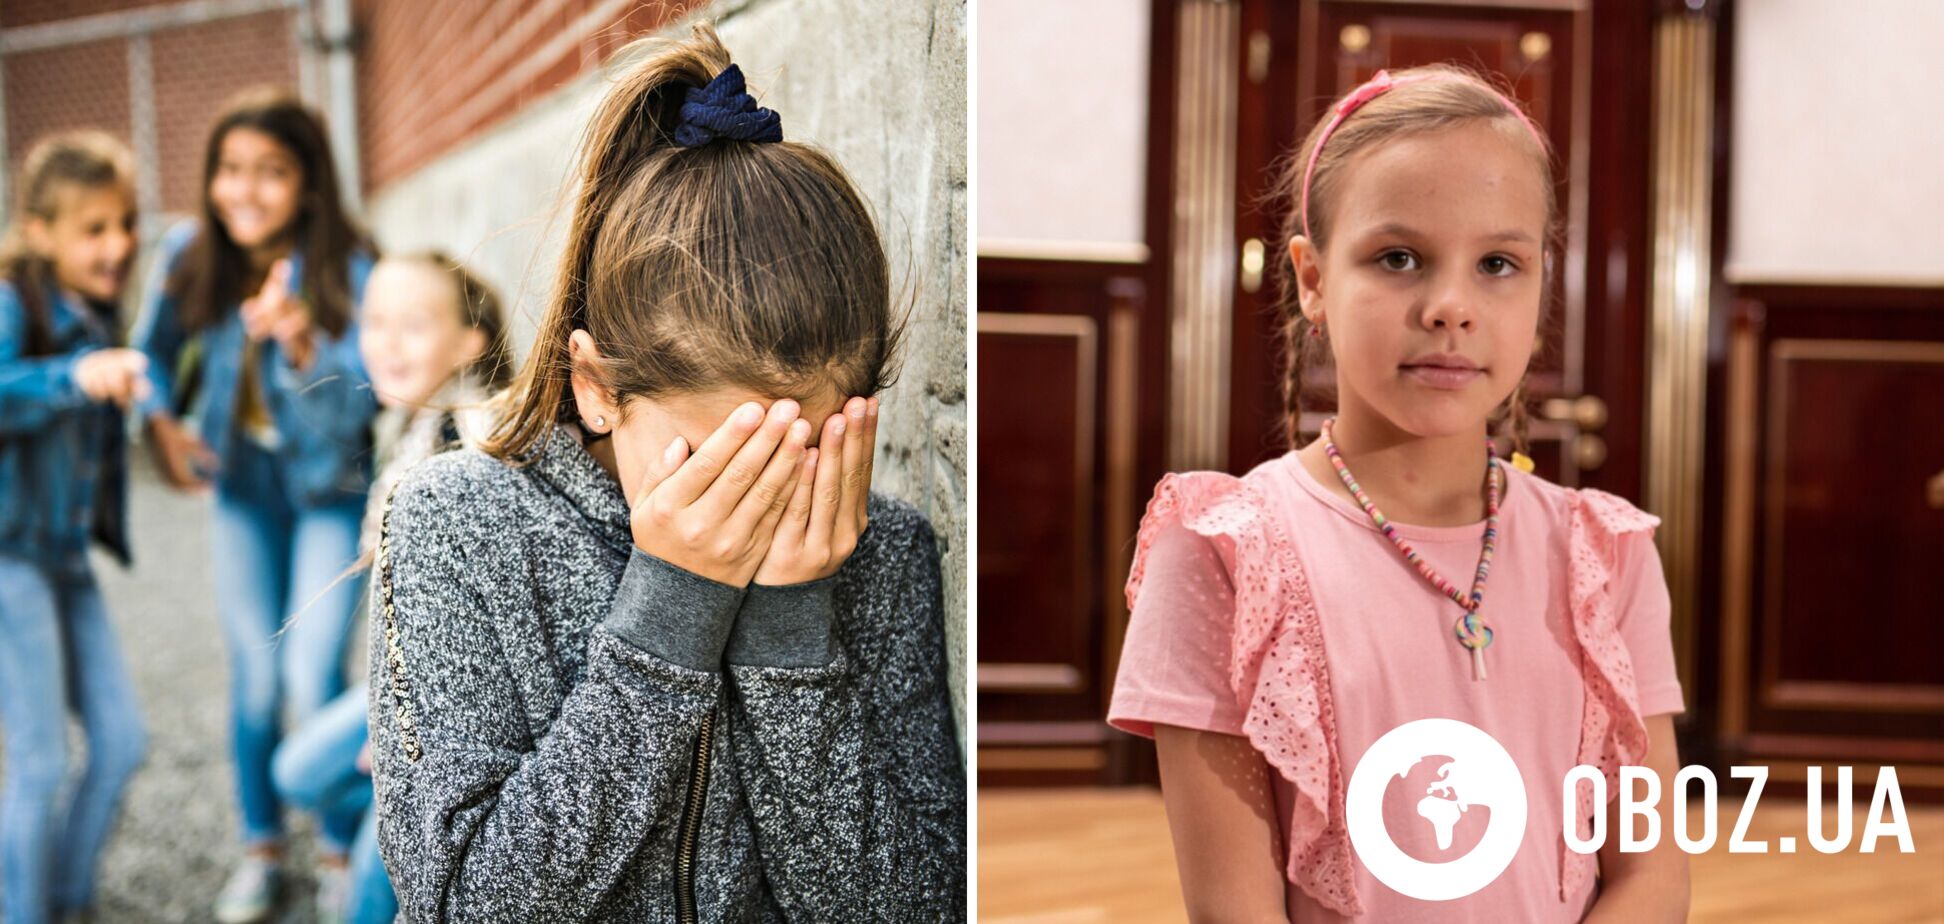 10-летняя украинская актриса шокировала рассказом об издевательствах в школе: заставляли становиться на колени и избивали